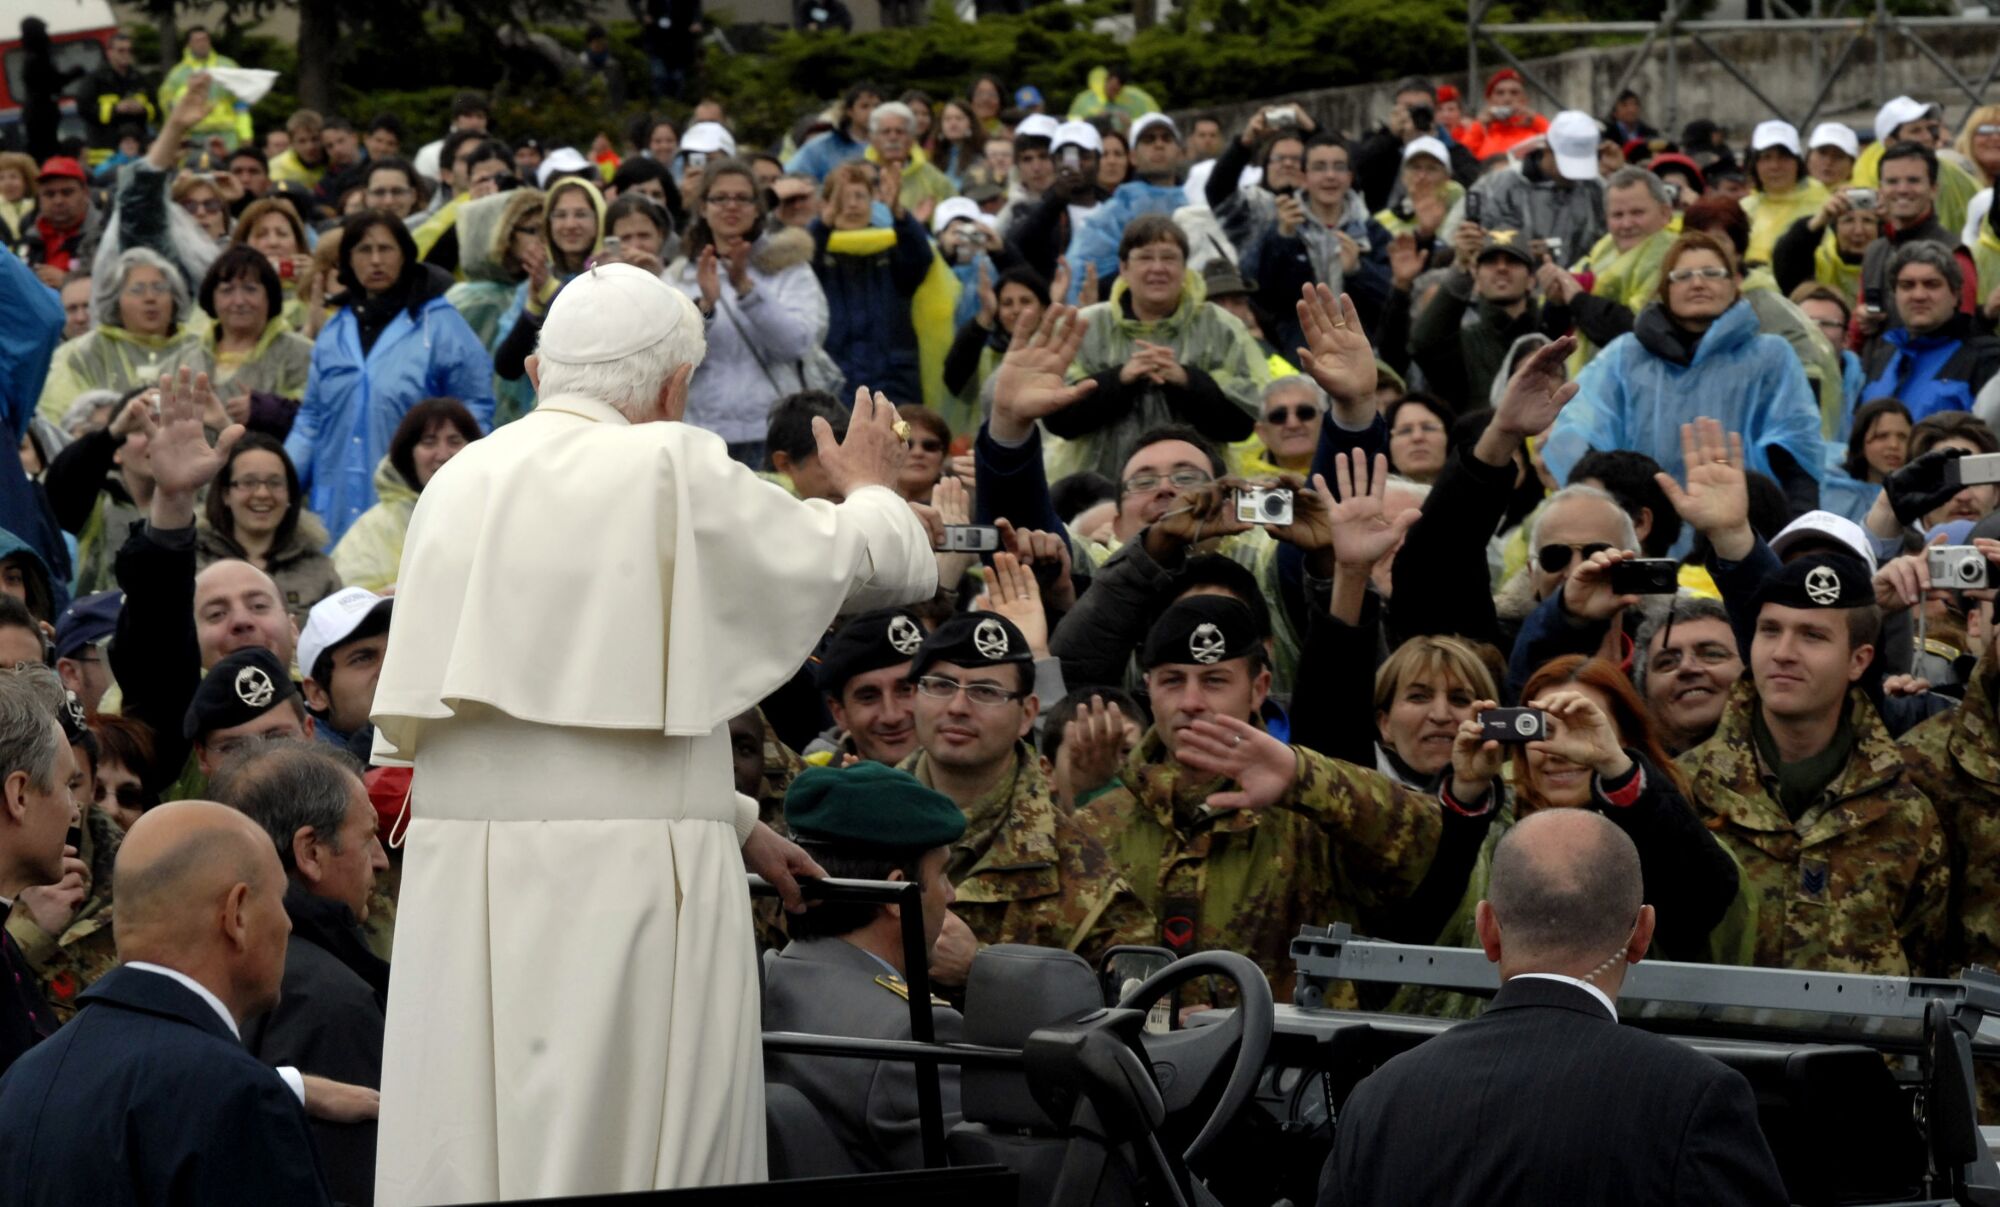 O Papa Bento XVI acena para as pessoas que incluem um grupo de soldados no meio da multidão.